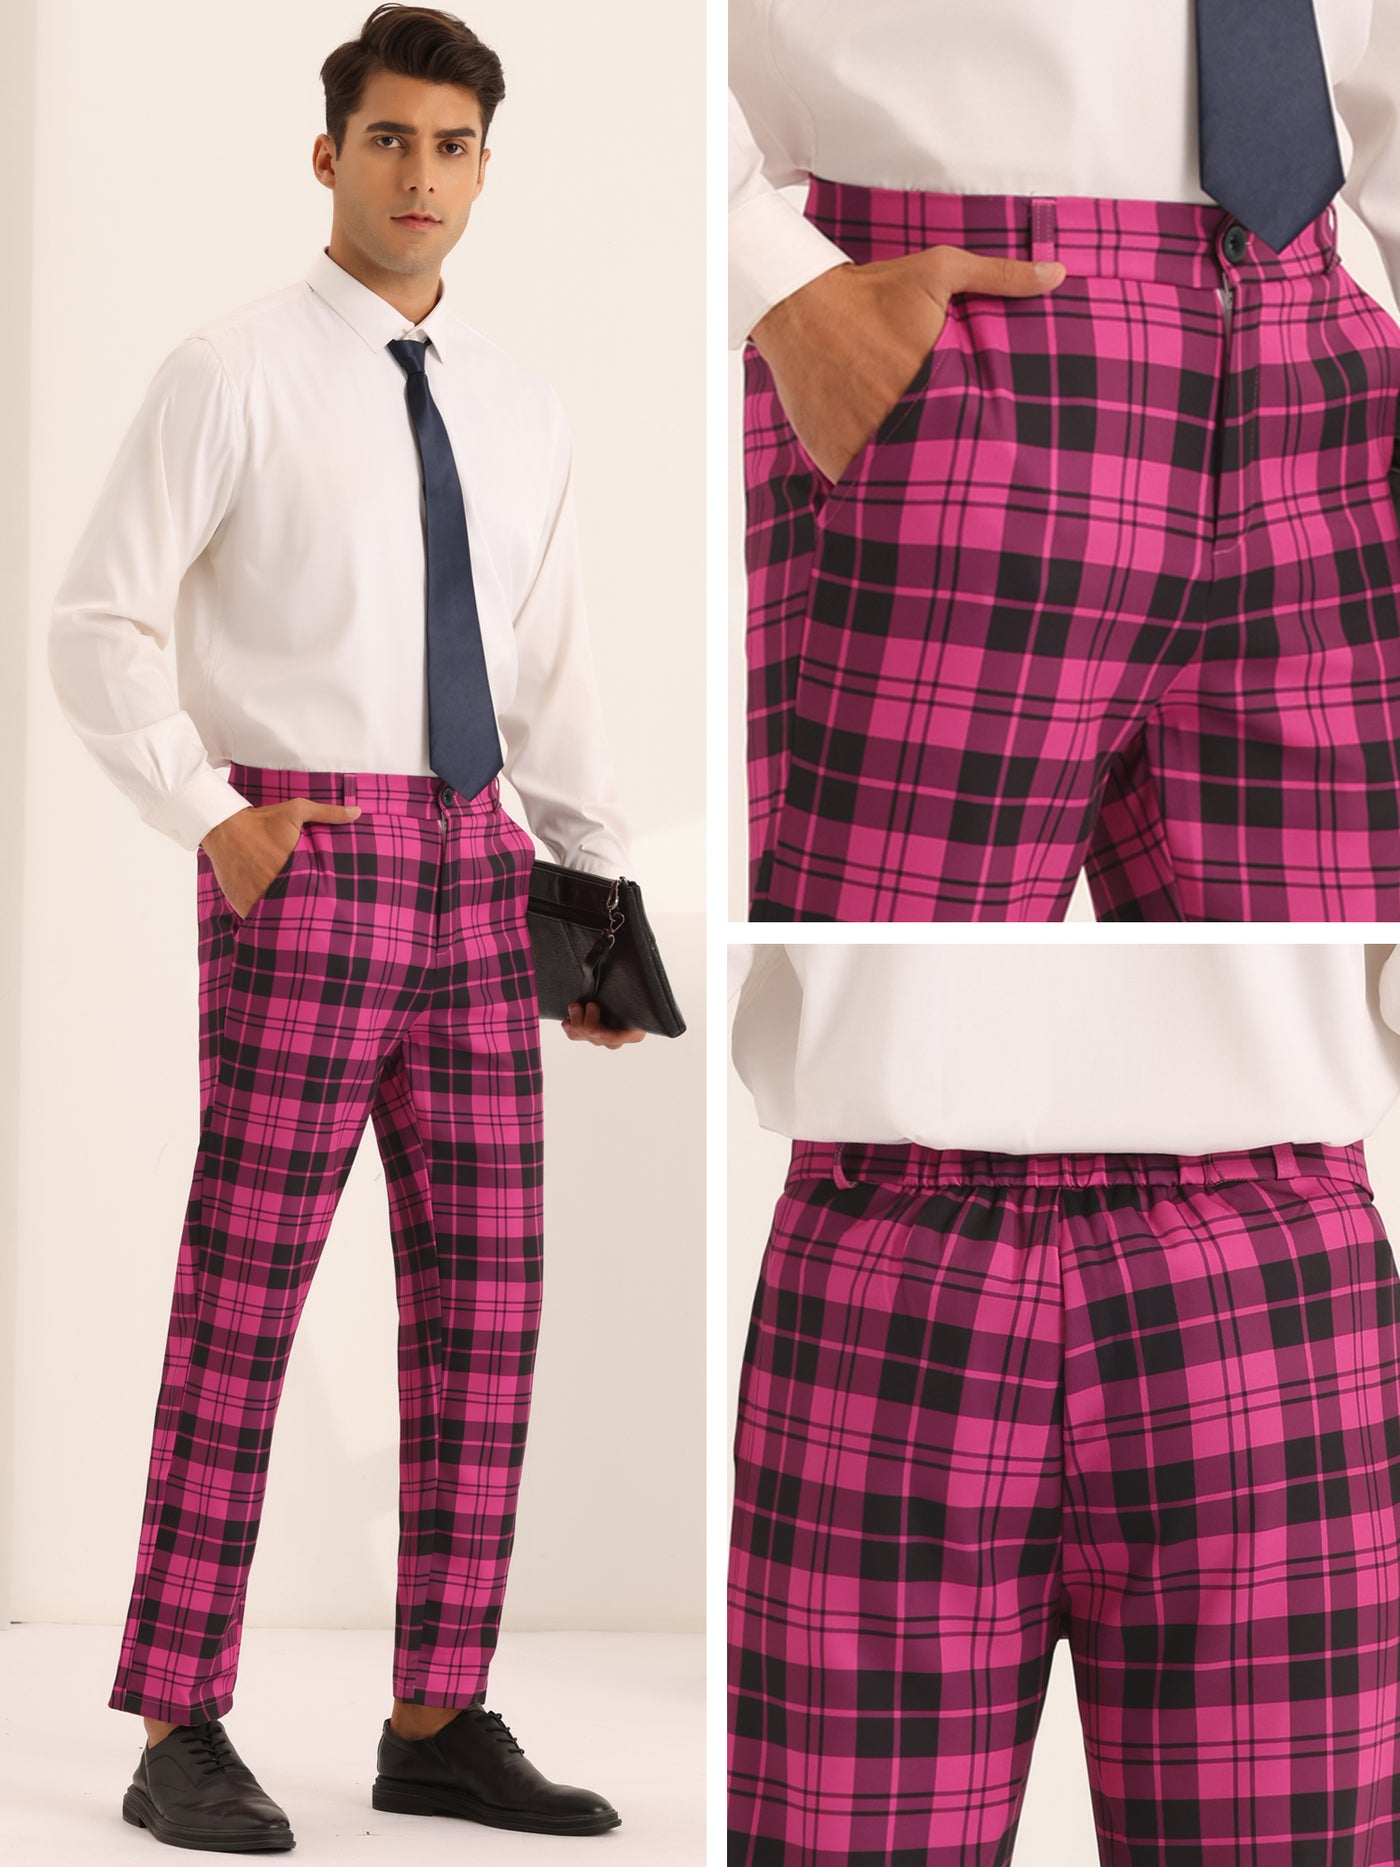 Bublédon Plaid Dress Pants for Men's Slim Fit Flat Front Business Checked Suit Trousers